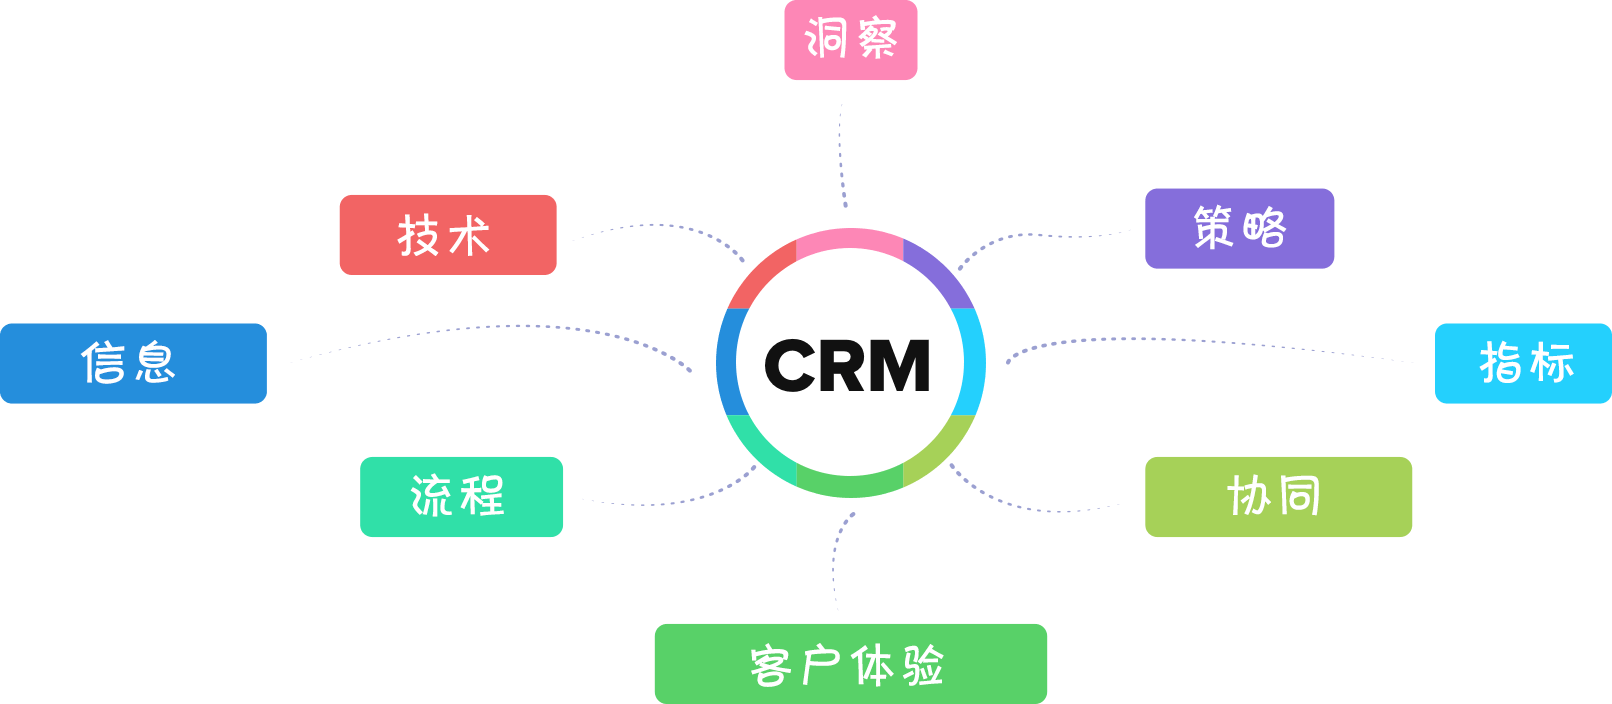 CRM基本要素 - Zoho CRM